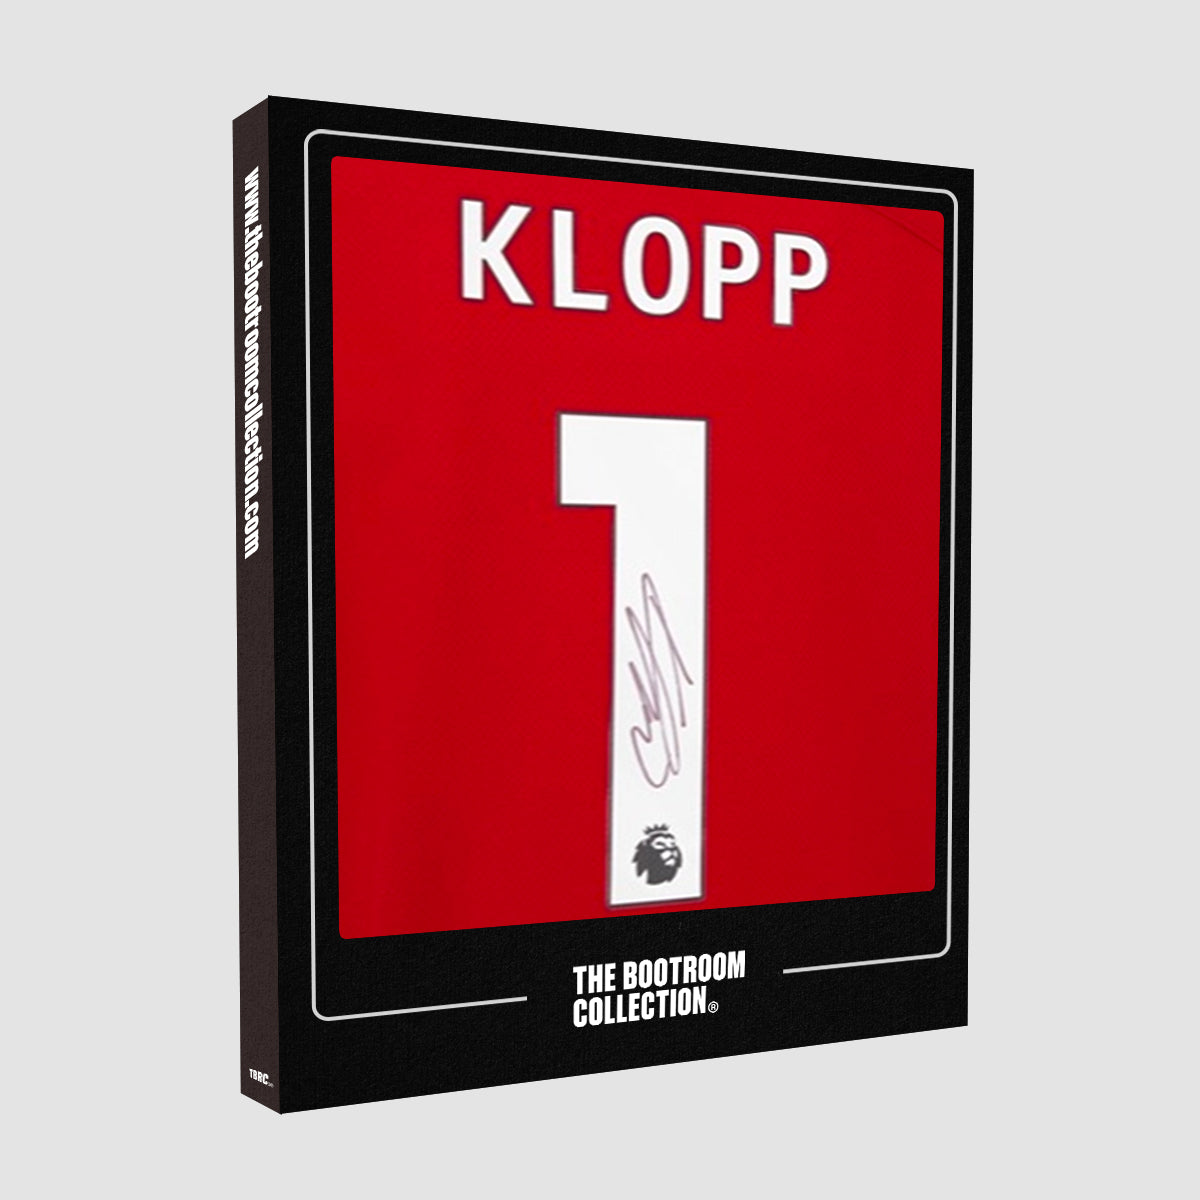 Jurgen Klopp Signed 23/24 Liverpool FC Home Shirt